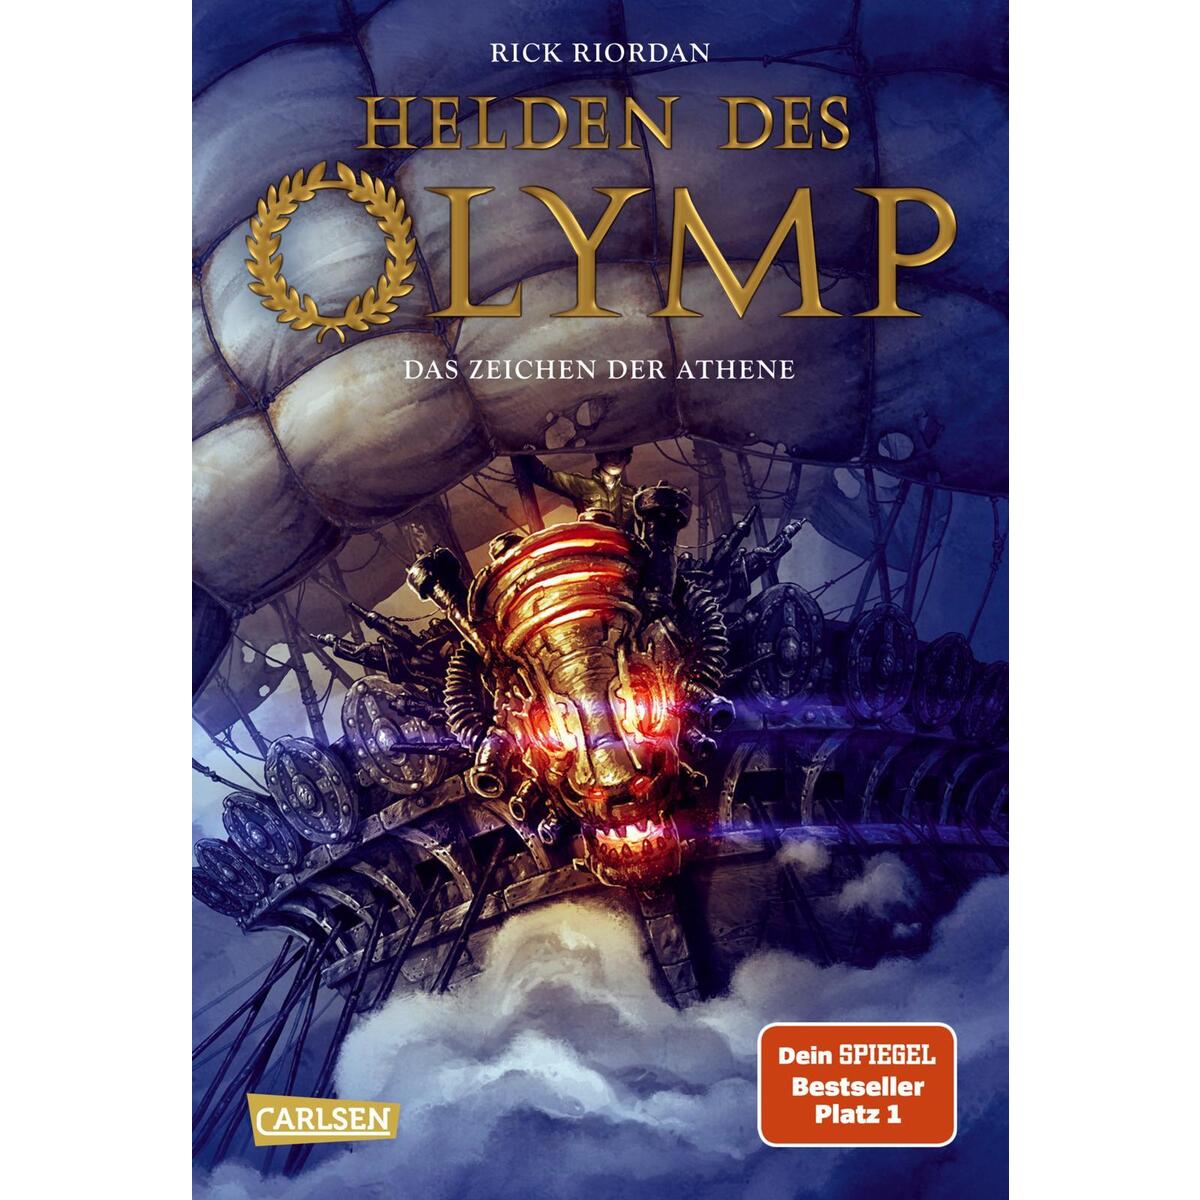 Helden des Olymp 03: Das Zeichen der Athene von Carlsen Verlag GmbH